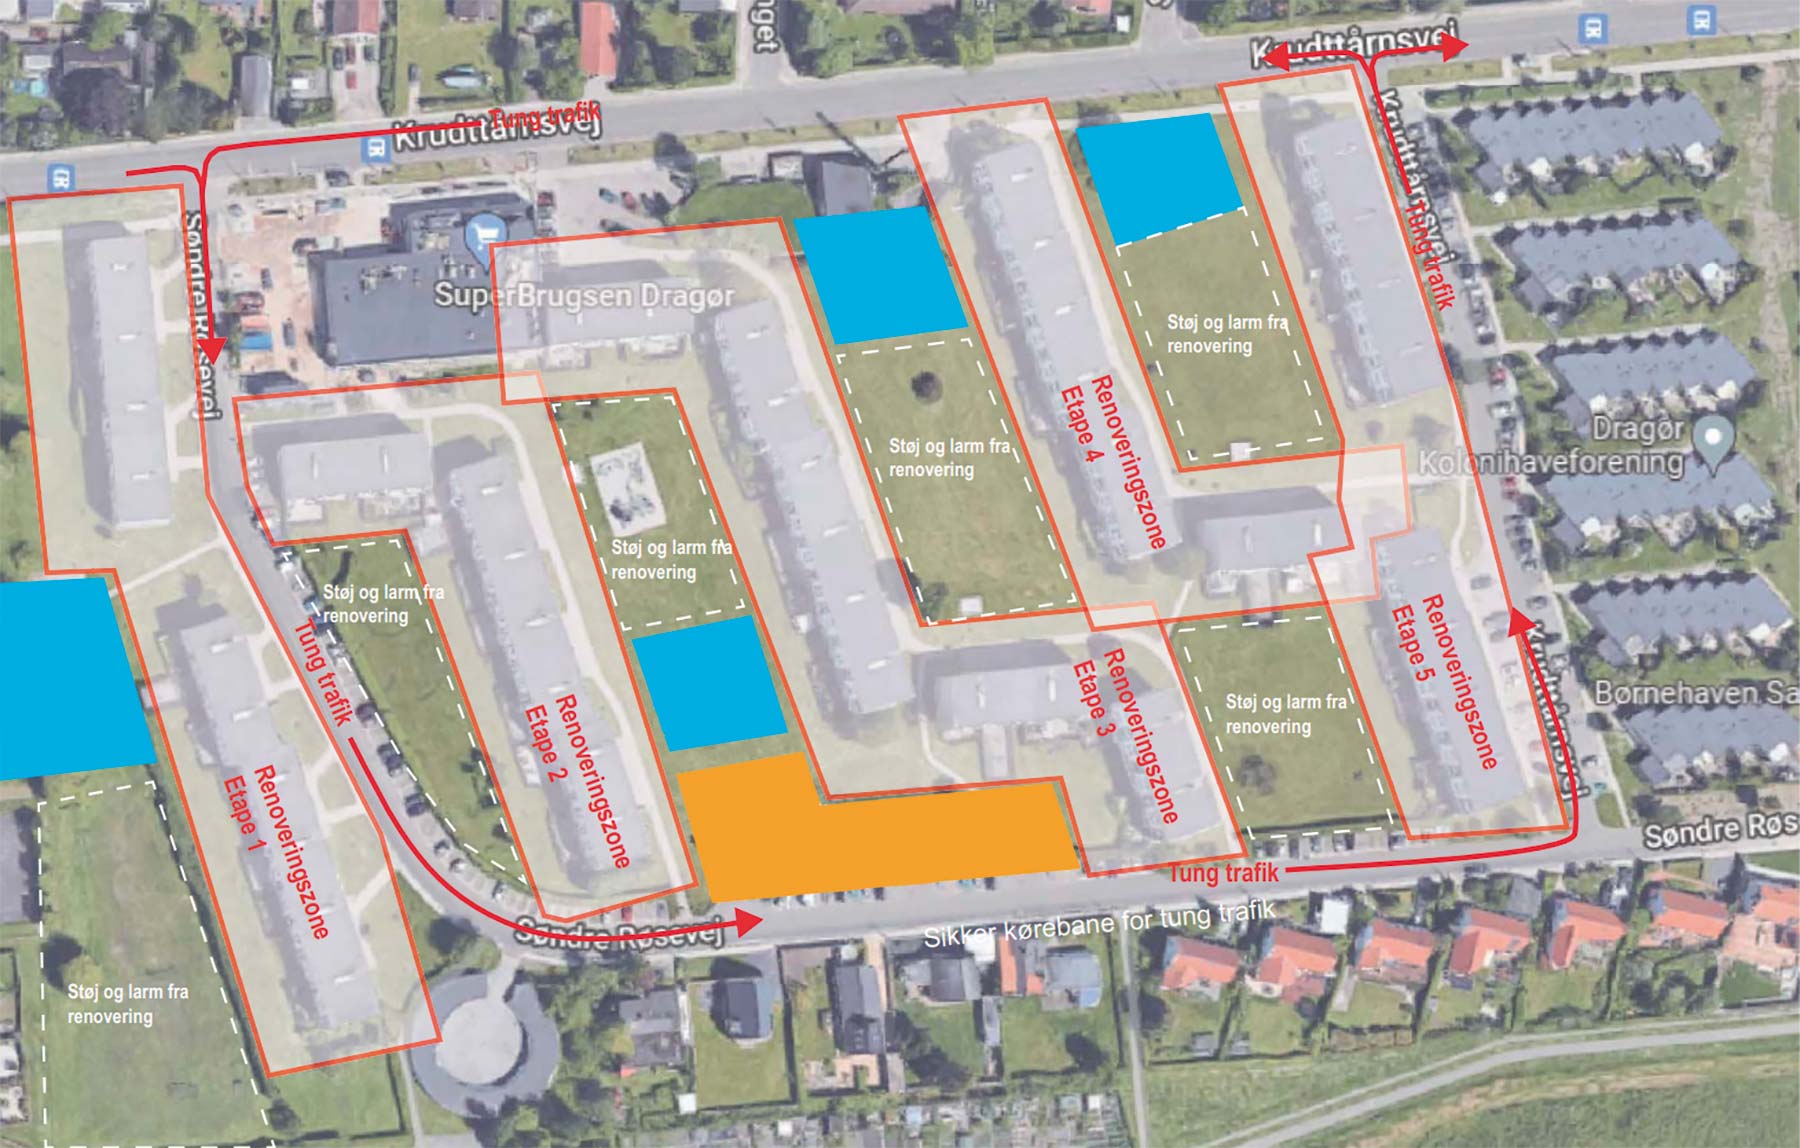 Det orange område er byggepladser og det blå område er materialegård. De grønne områder med hvid stiplet markering er hvor Strandparken mener der er for meget støj og larm under renoveringne. Områderne med rød markering er renoveringszonerne.